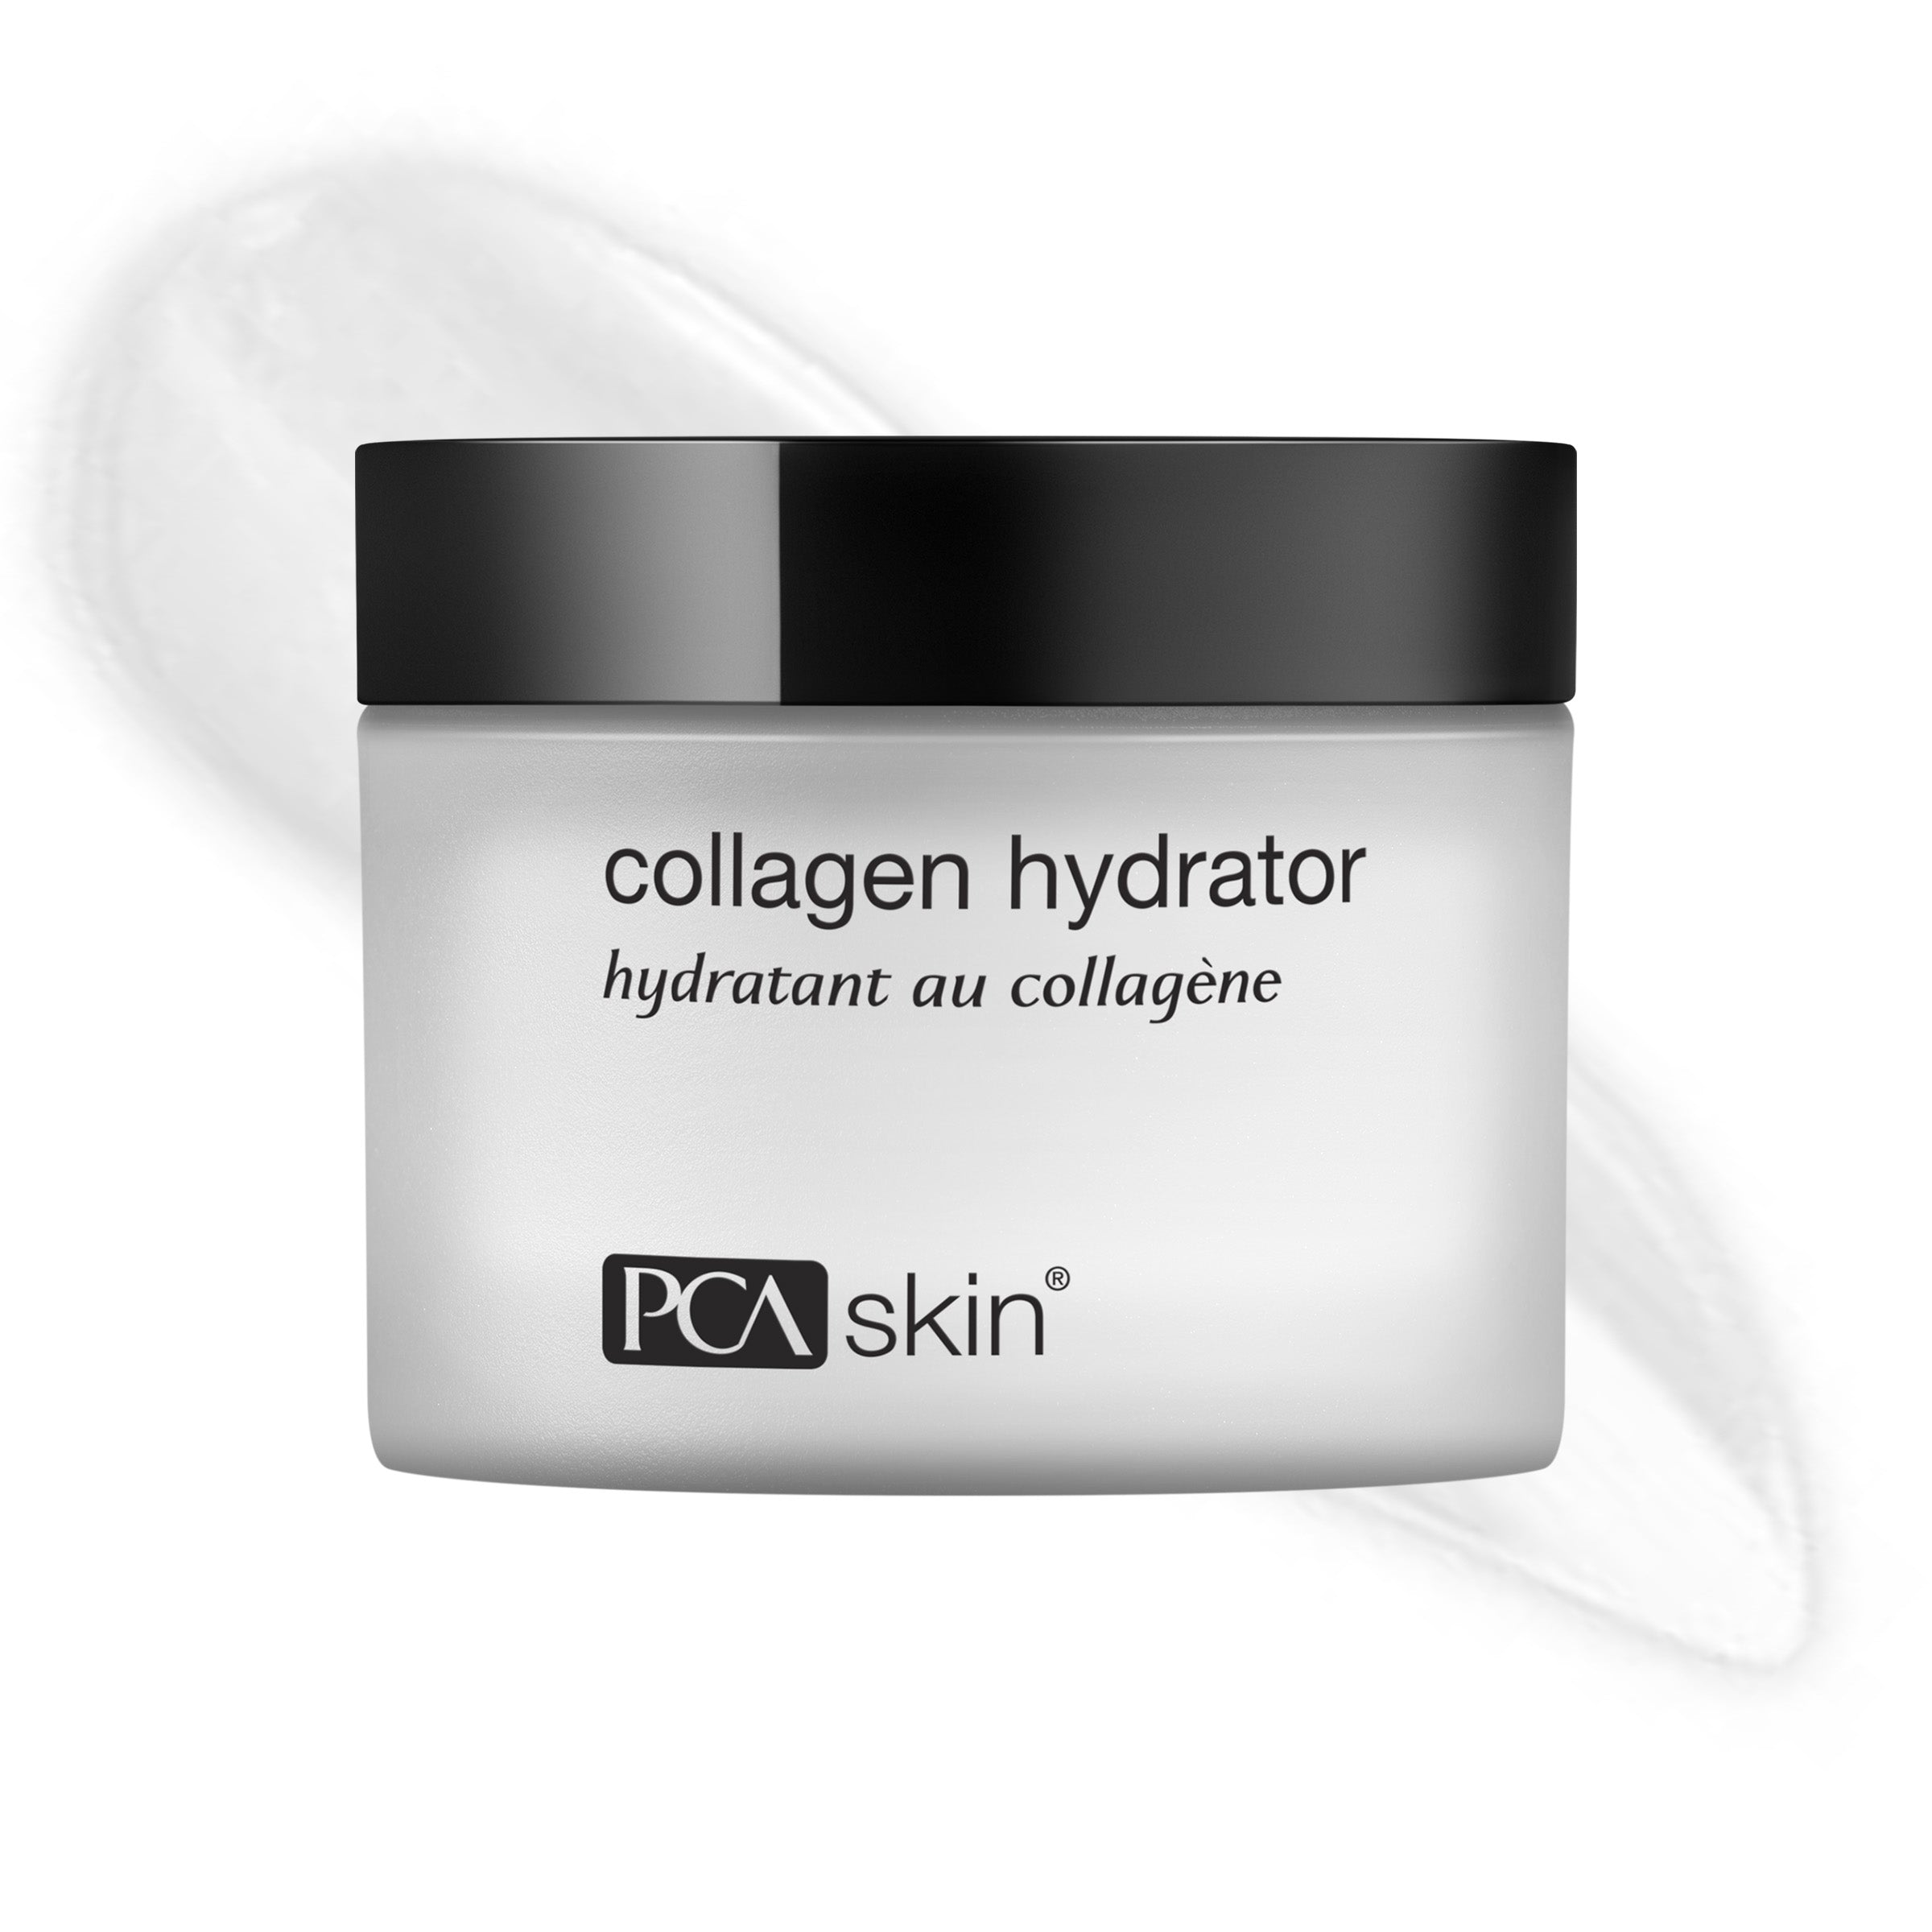 PCA hidratant kolagena za kožu (1.7 oz)